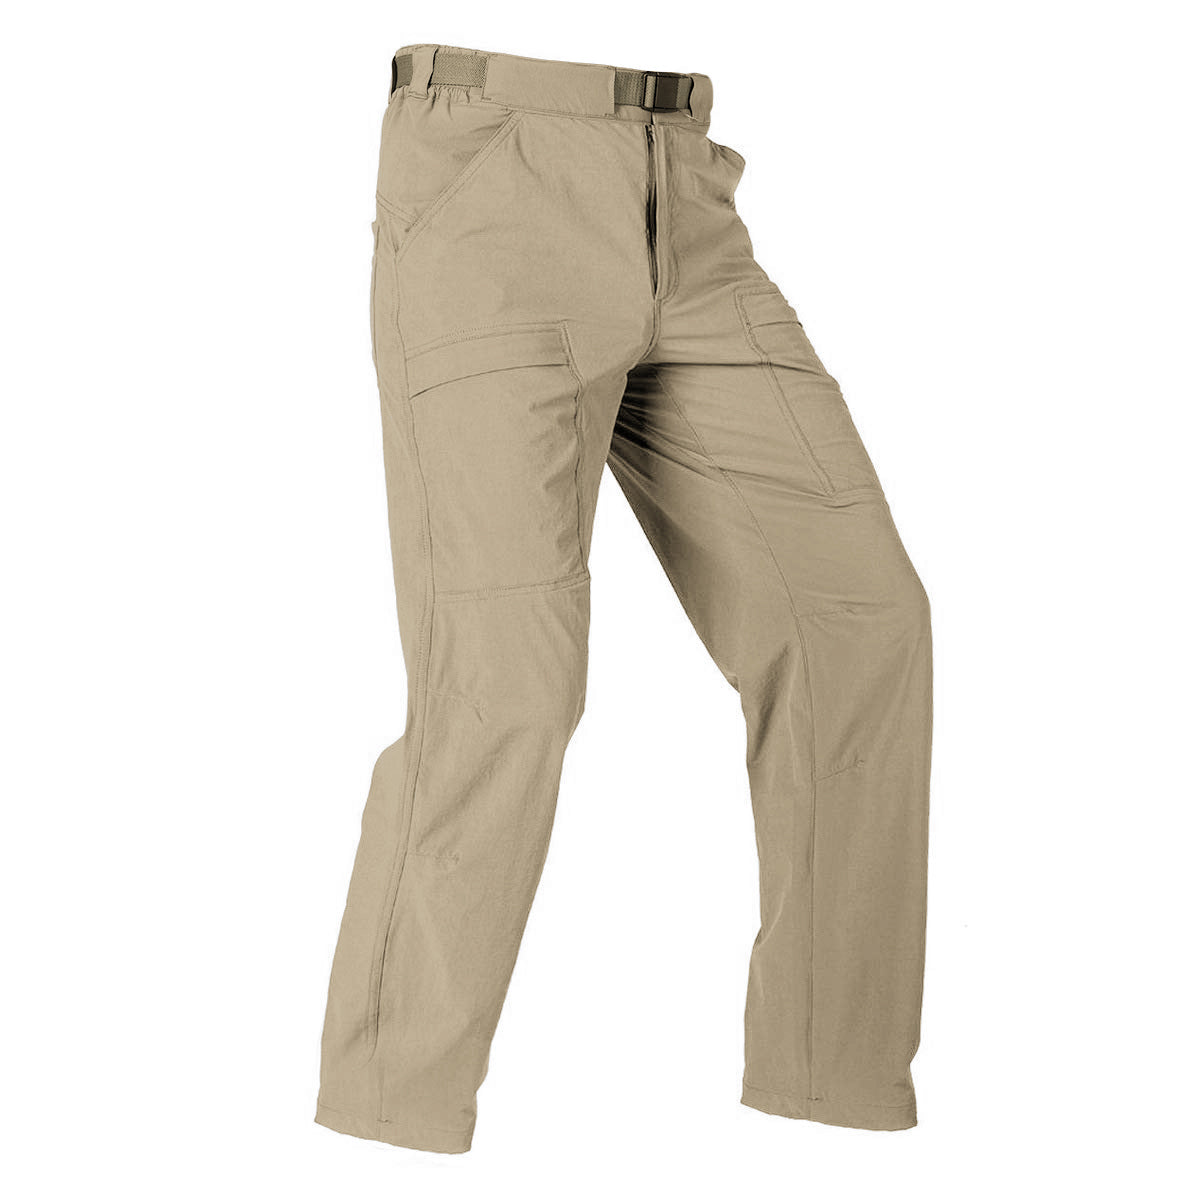 Niuer Men's Lightweight Outdoor Pants Cargo Work Pants with